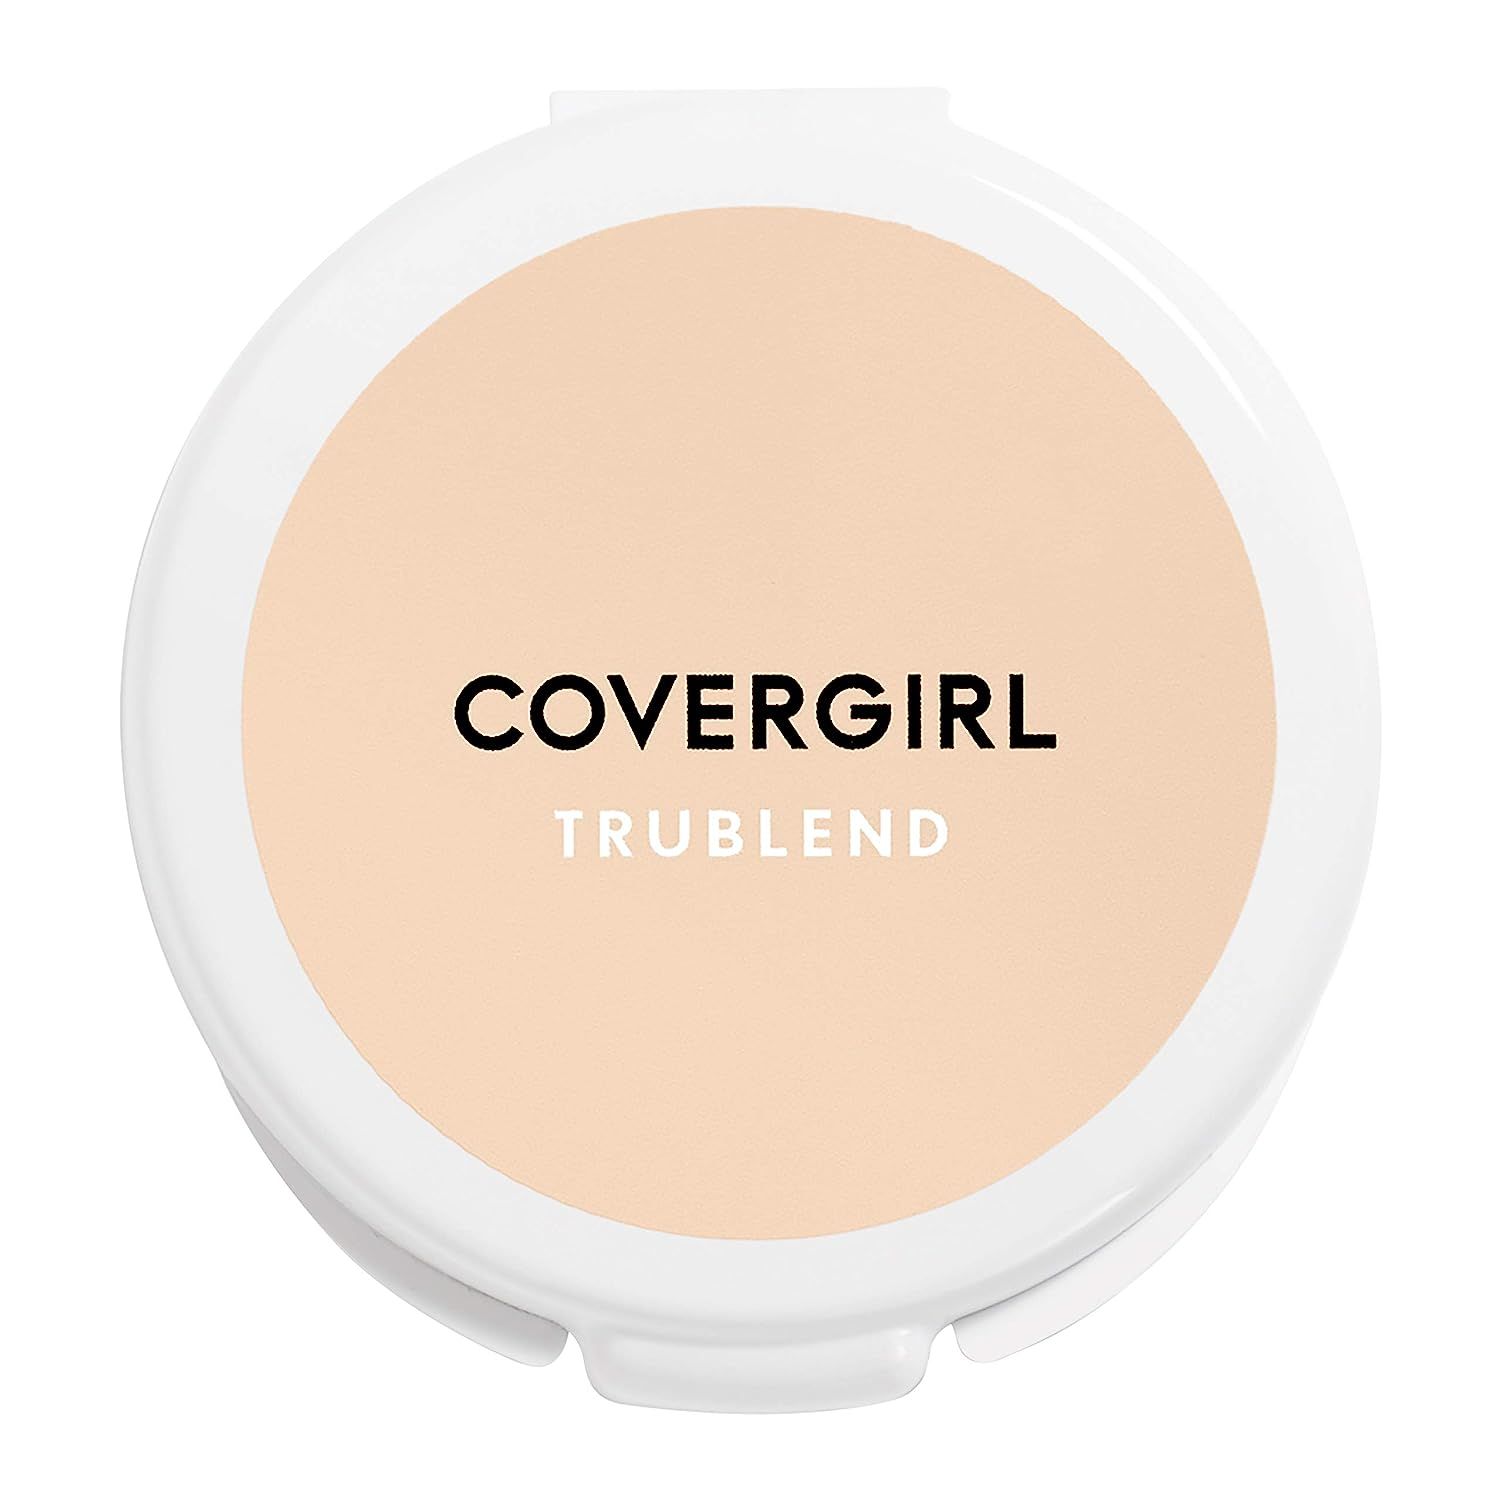 Covergirl Trublend Pressed Powder, 001 Translucent Fair | Amazon (US)